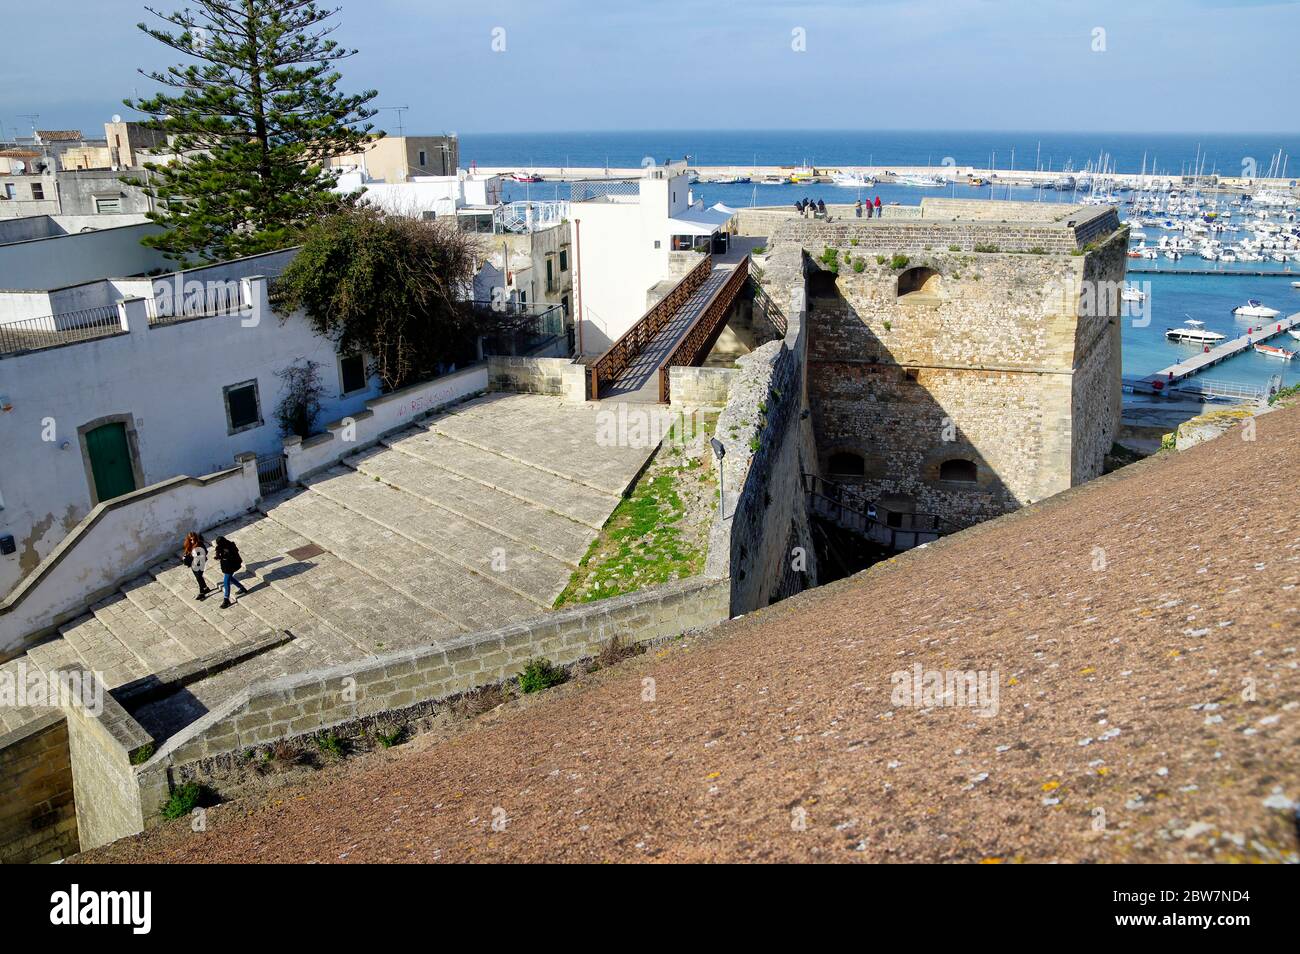 OTRANTO, APULIA, ITALIE - 30 MARS 2018 : un magnifique paysage urbain de la ville d'Otranto depuis les murs du château médiéval aragonais d'Otranto, Apulia, Italie Banque D'Images